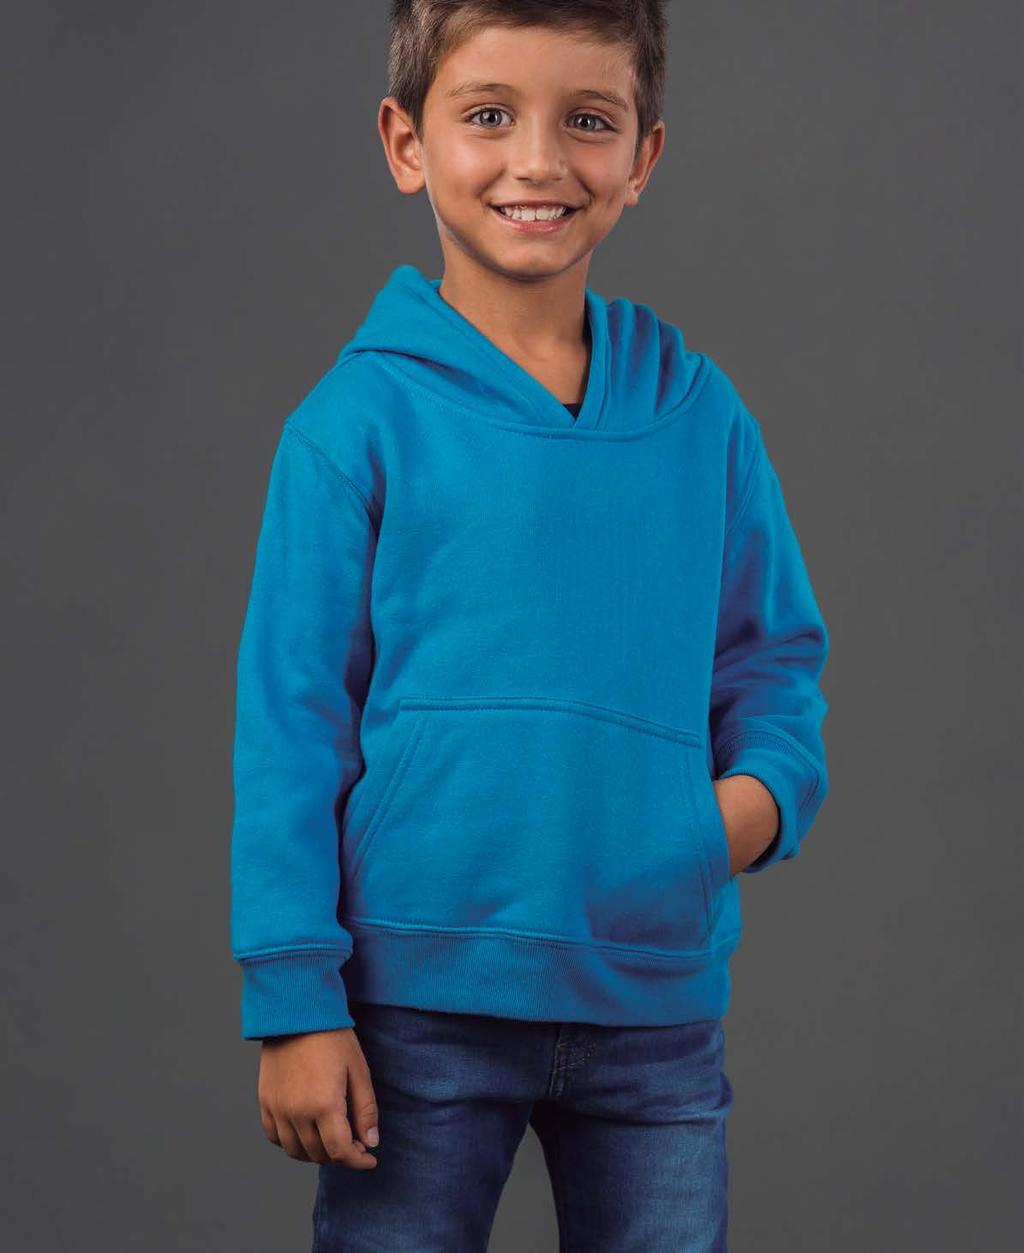 PHOENIX KIDS sweatshirt unissexo com capuz para criança 320 g/m 2 capuz segundo as normas de segurança da